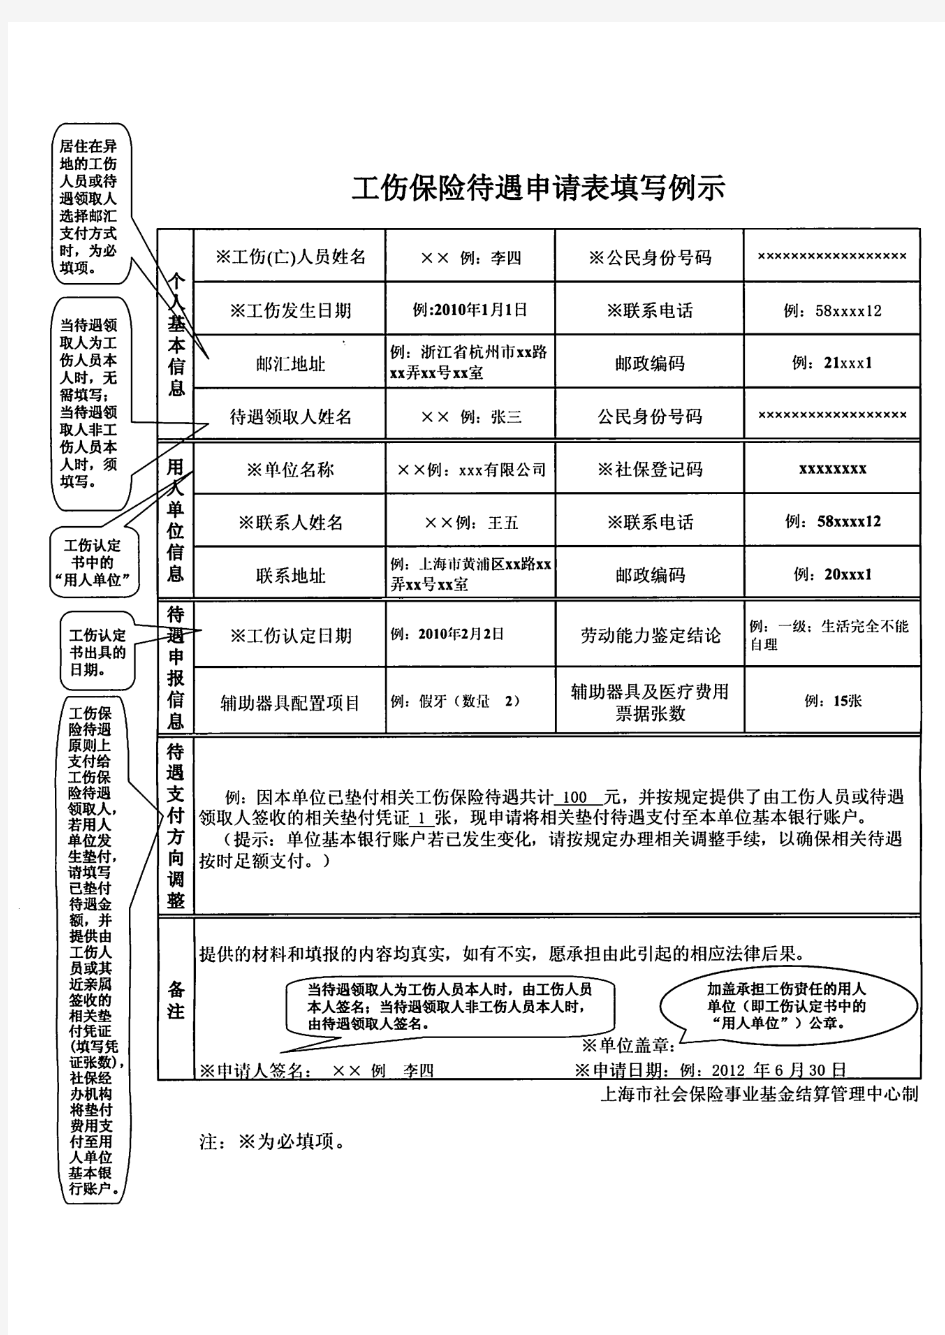 上海市《工伤保险待遇申请表》(含样表)